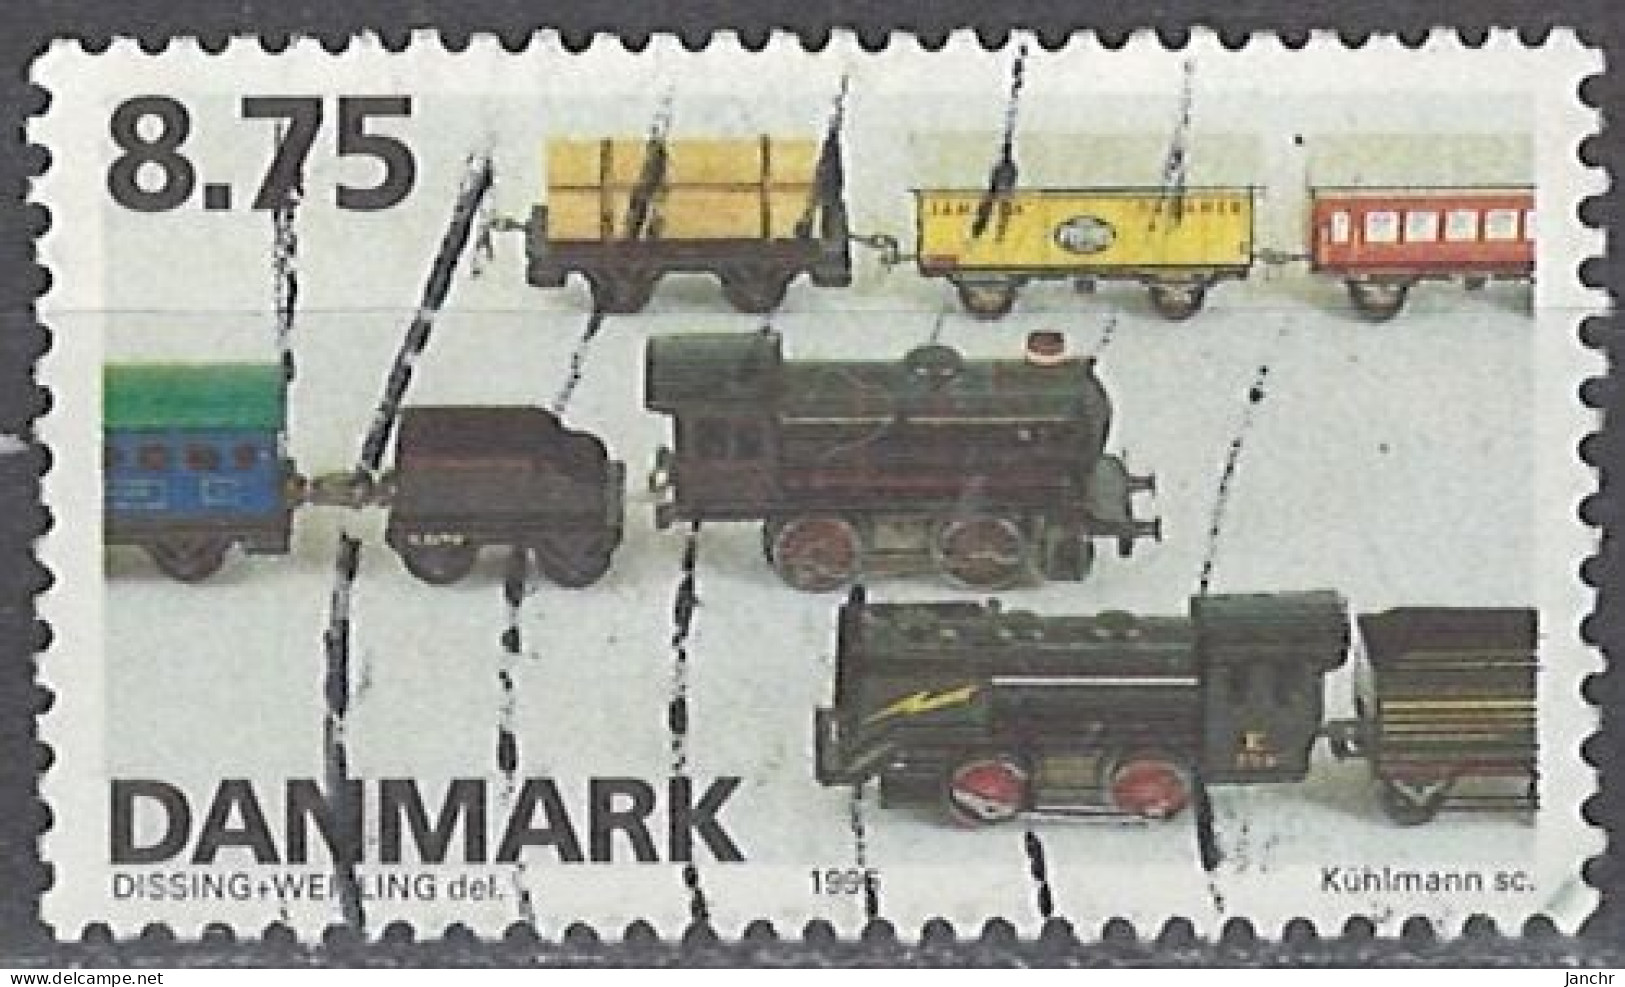 Denmark 1995. Mi.Nr. 1114, Used O - Usati